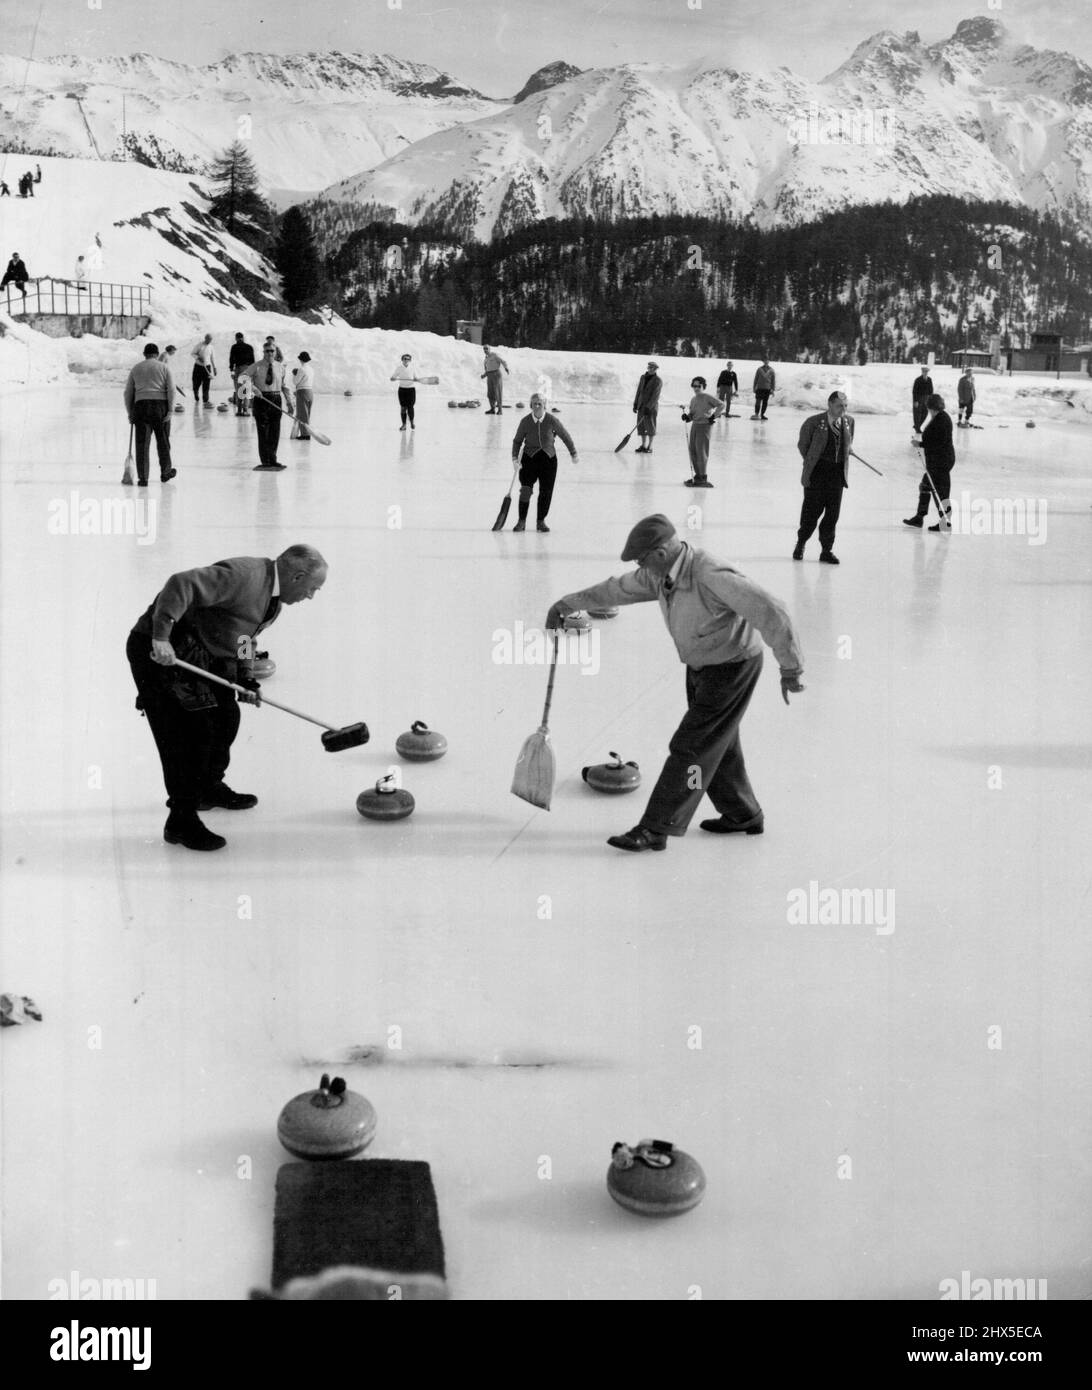 Villes du monde Saint-Moritz (cinquième de quatorze). Le pittoresque sport de curling est à voir à Saint-Moritz. Ici, au Kulm Hotel Curling Rink, les passionnés du jeu jouent avec les majestueuses Alpes qui s'élève en arrière-plan. Parmi les installations les plus impressionnantes du centre Aviemore, on trouve cette patinoire et cette piste de curling, d'une superficie de 20 000 pieds carrés. Les pierres de curling très polies pèsent plus de 40 lb 2 novembre 1955. (Photo de United Press). Banque D'Images